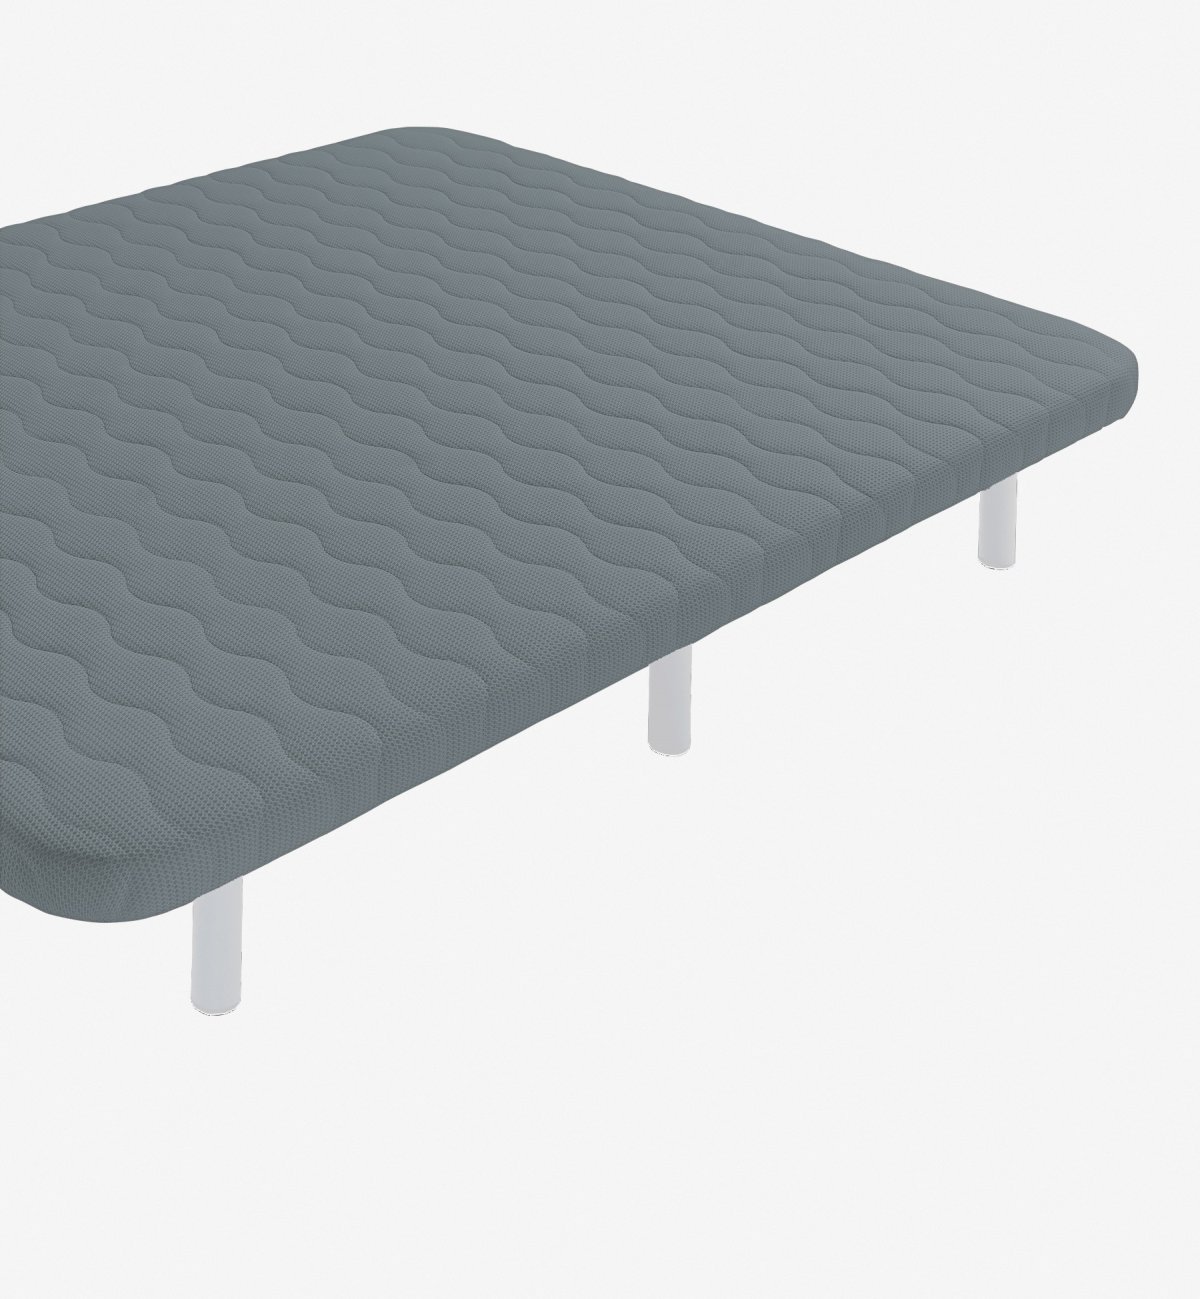 Einpersonenbett aus Stahl und atmungsaktivem 3D Kadolis Gewebe